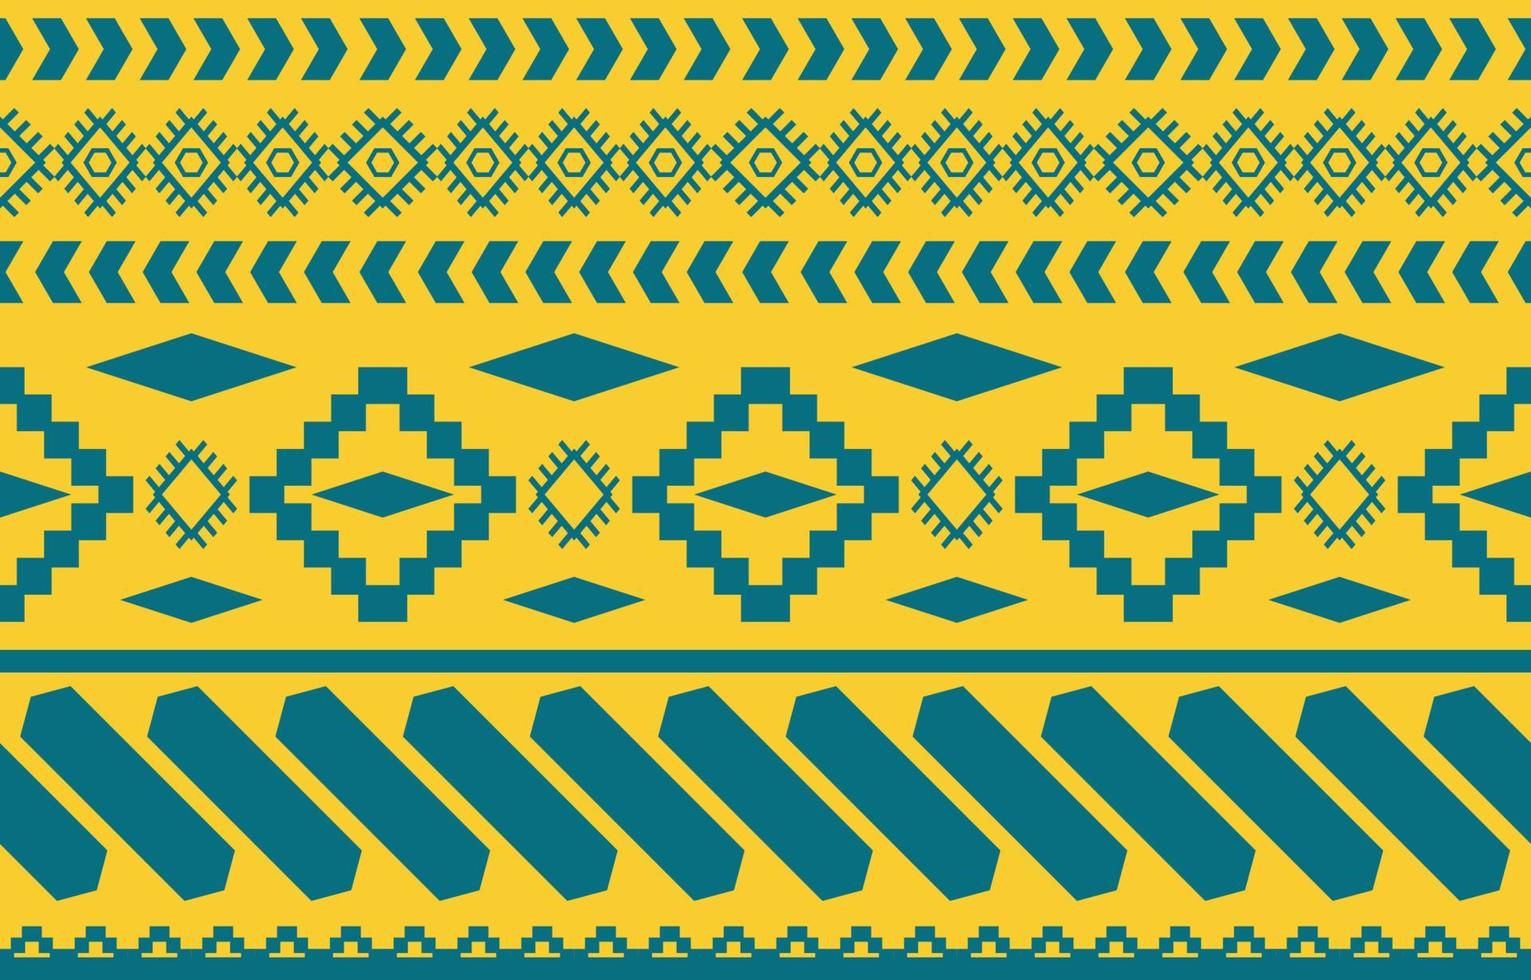 Hãy thưởng thức mẫu vải theo phong cách Navajo Native American hoa văn bản thổ dân đầy màu sắc và tỉ mỉ. Mẫu vải này sẽ đưa bạn đến với thế giới của phong cách bản địa và những họa tiết hoa văn tuyệt đẹp, chắc chắn sẽ giúp bạn cảm thấy thật tự tin và cuốn hút.